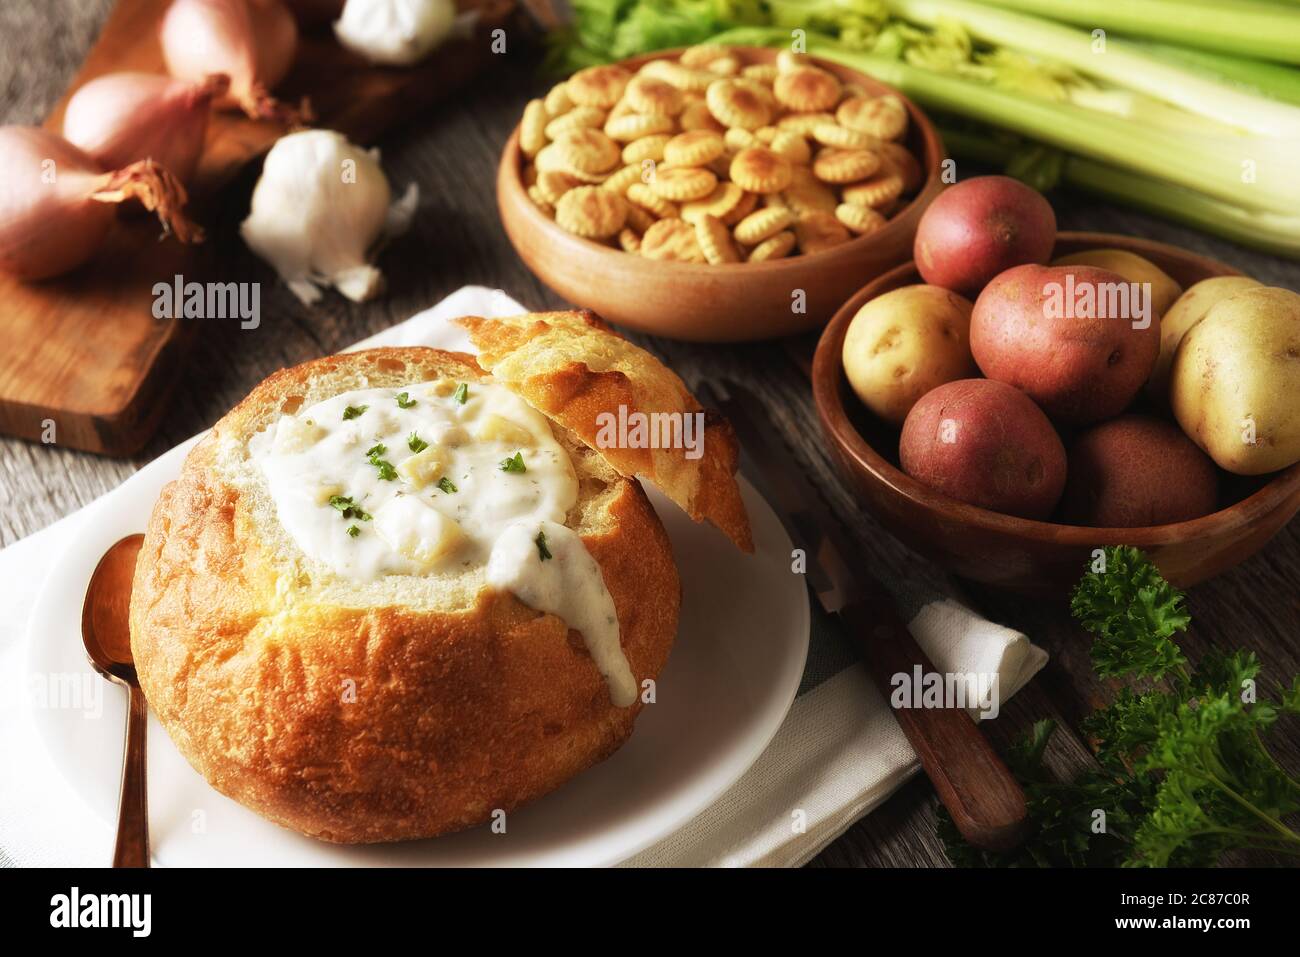 New England Clam Chowder Still Life: Una ciotola di pane piena di zuppa fresca fatta in casa con cracker e ingredienti. Foto Stock